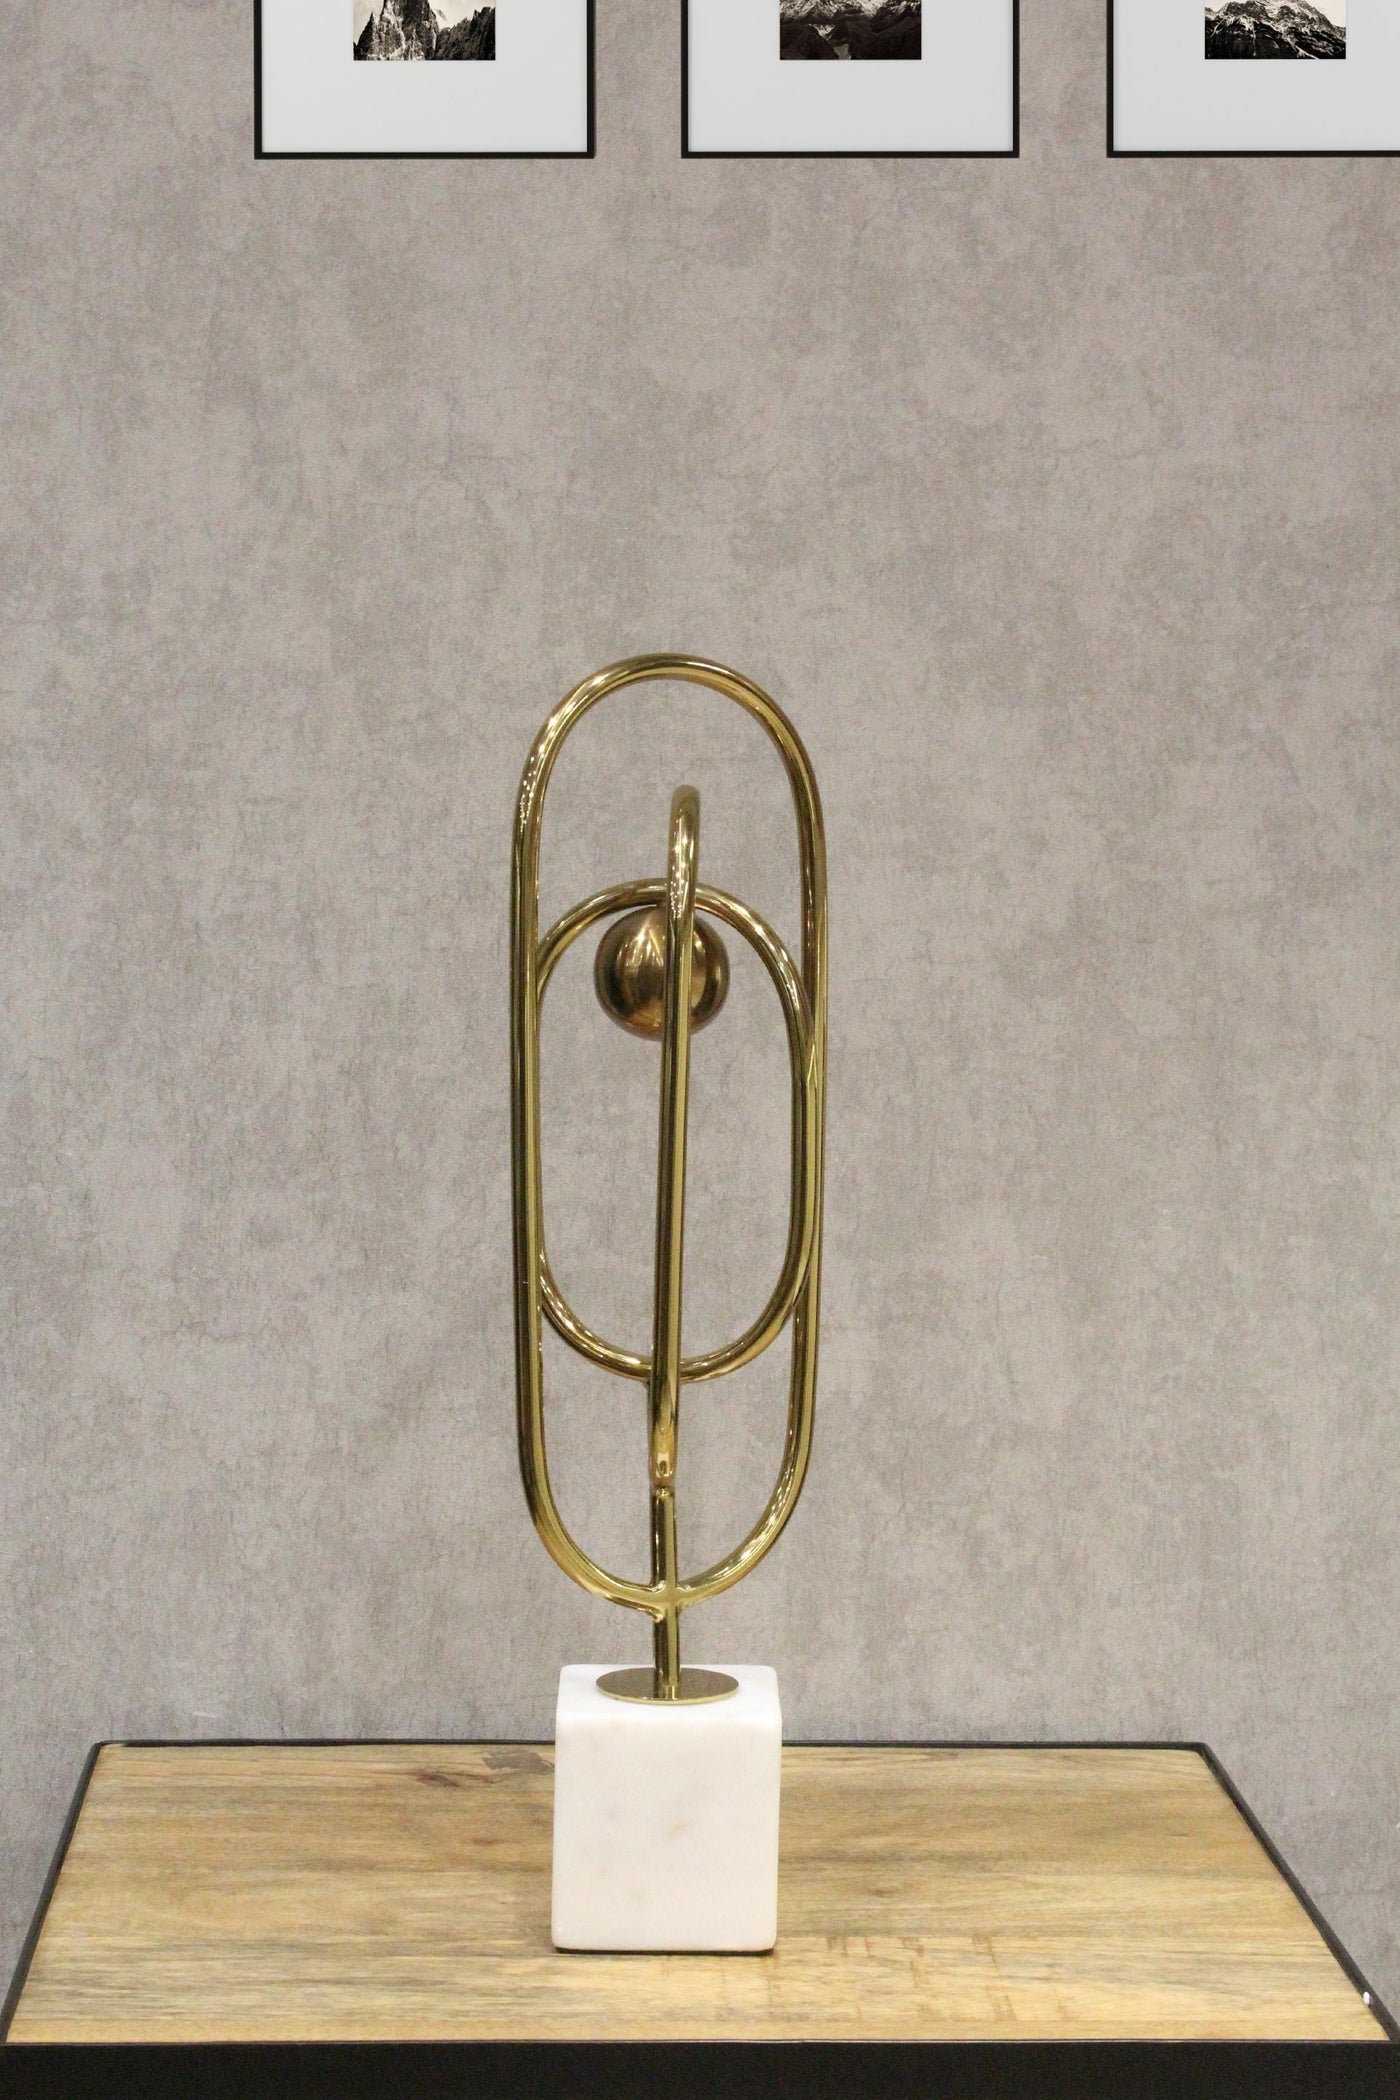 Splendid Dastkari Metal Oval Ring Table Accent-Small